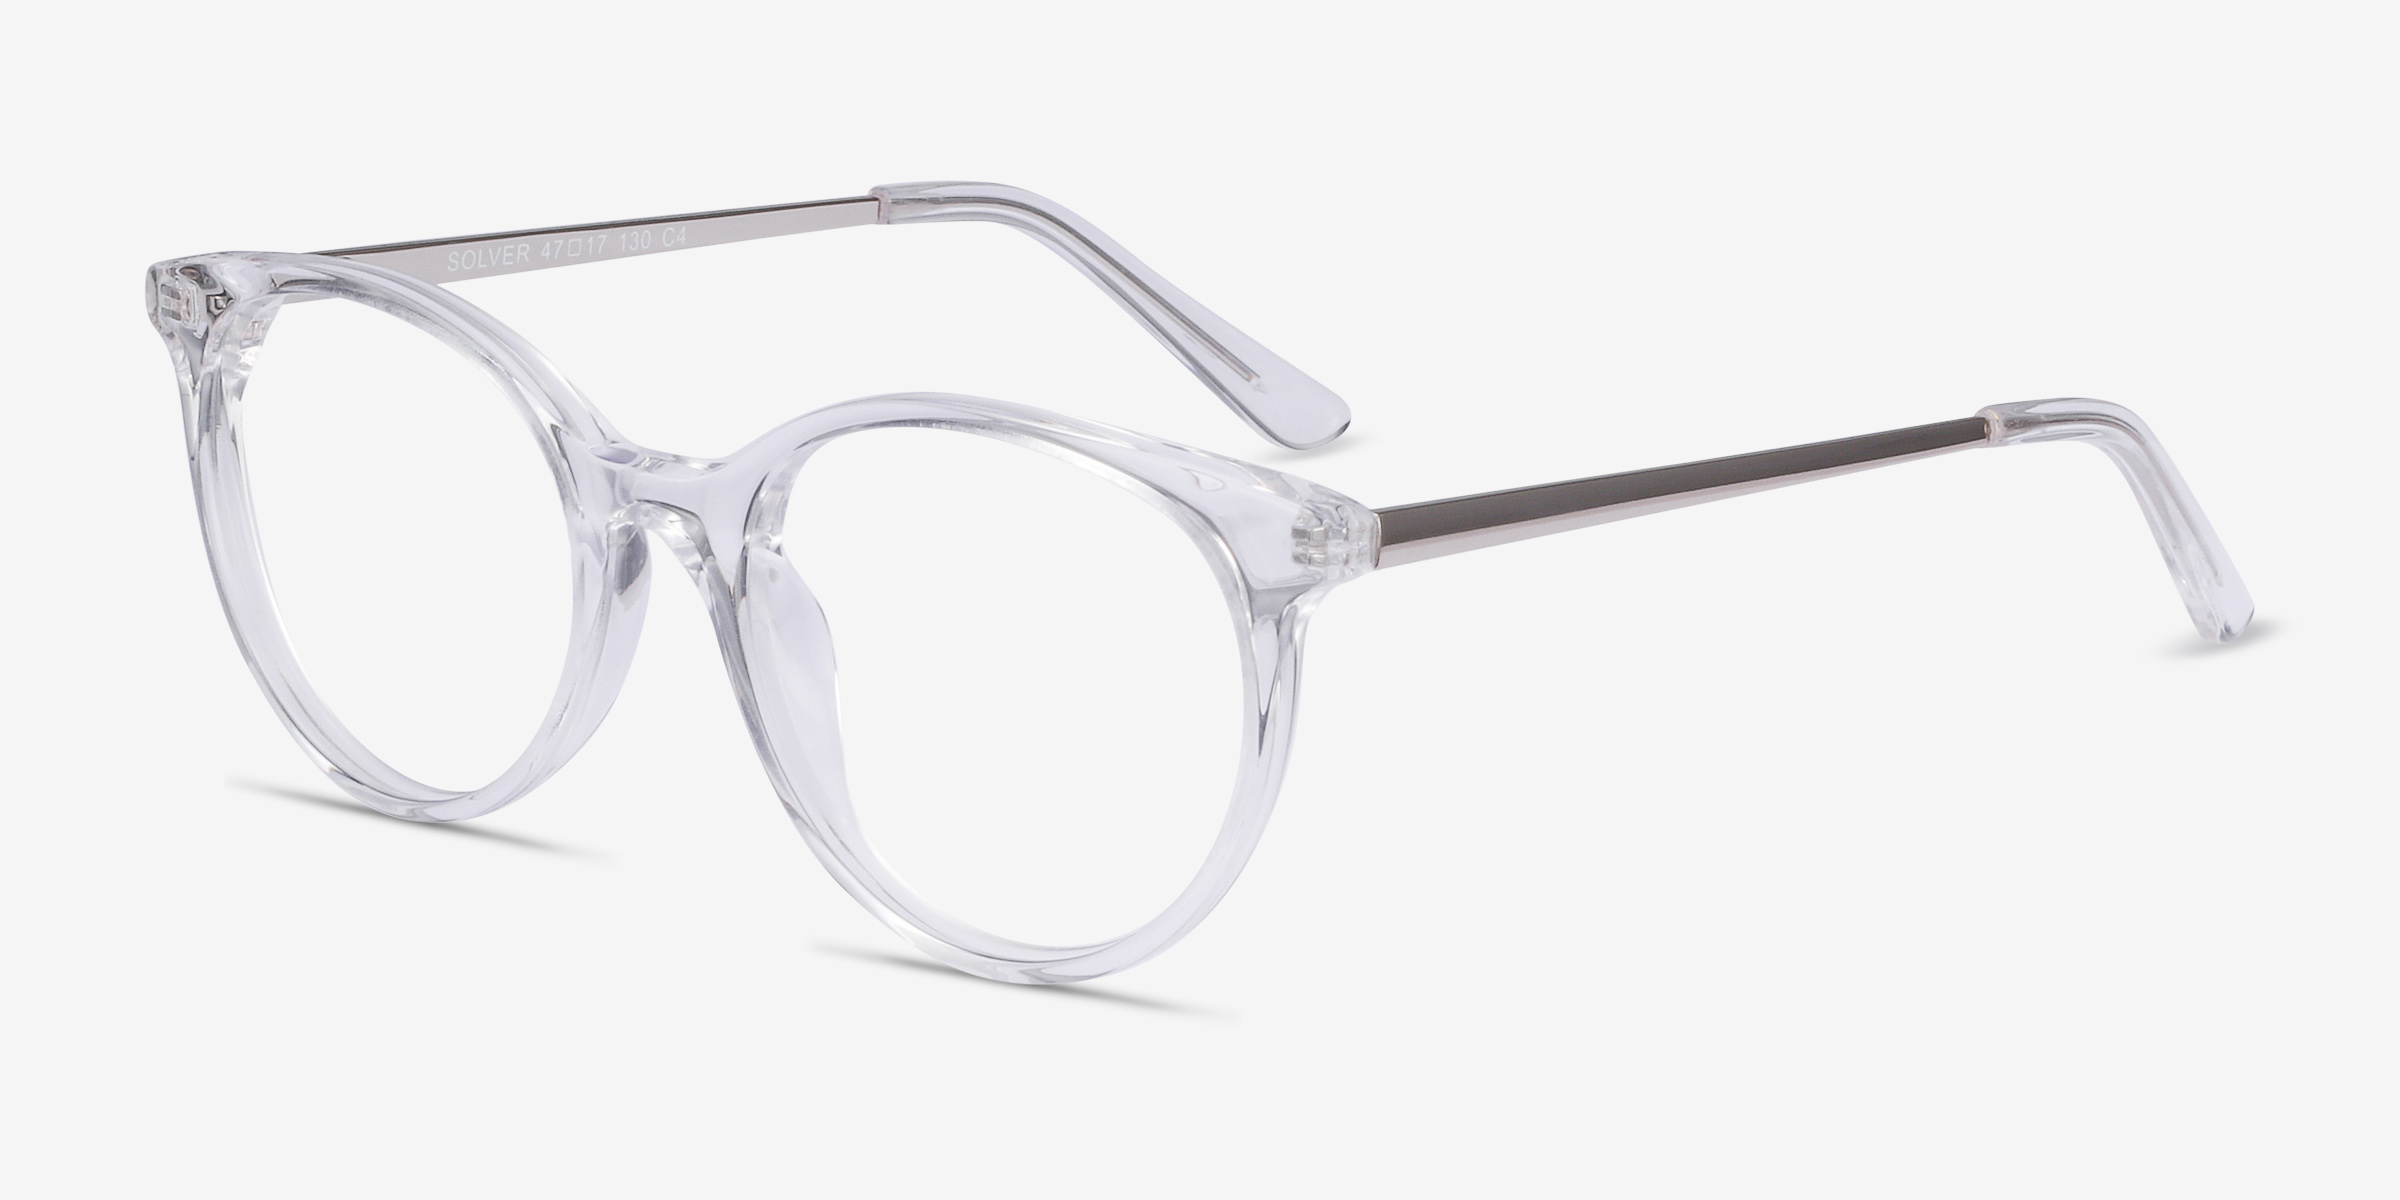 Solver Round Clear Full Rim Eyeglasses Eyebuydirect